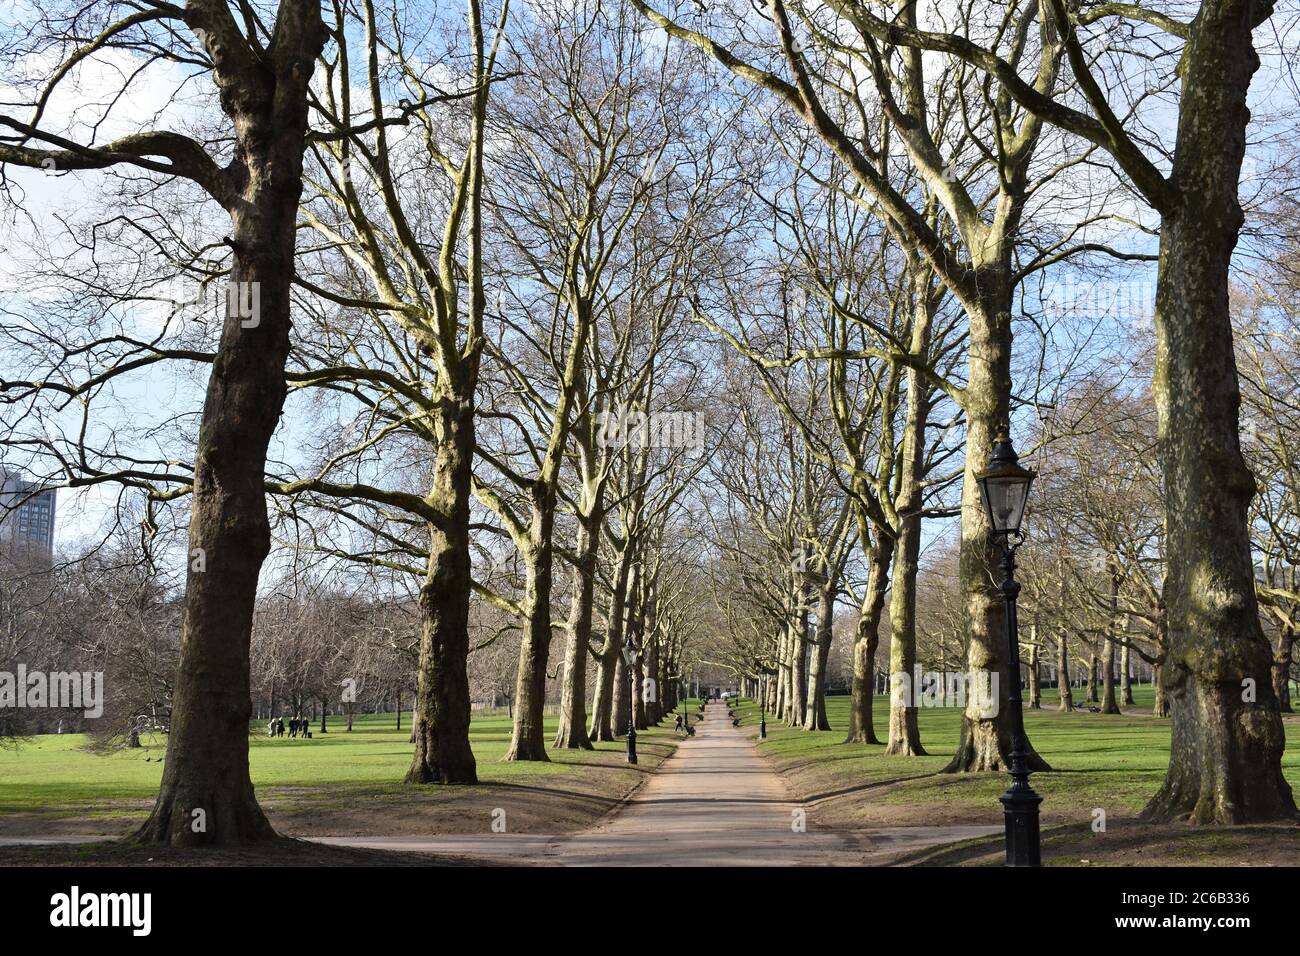 Ein Baum gesäumter Weg im Winter. Eine altmodische Straßenlaterne und blätterlose Bäume säumen den Gehweg im Green Park, London Royal Parks of London. Stockfoto